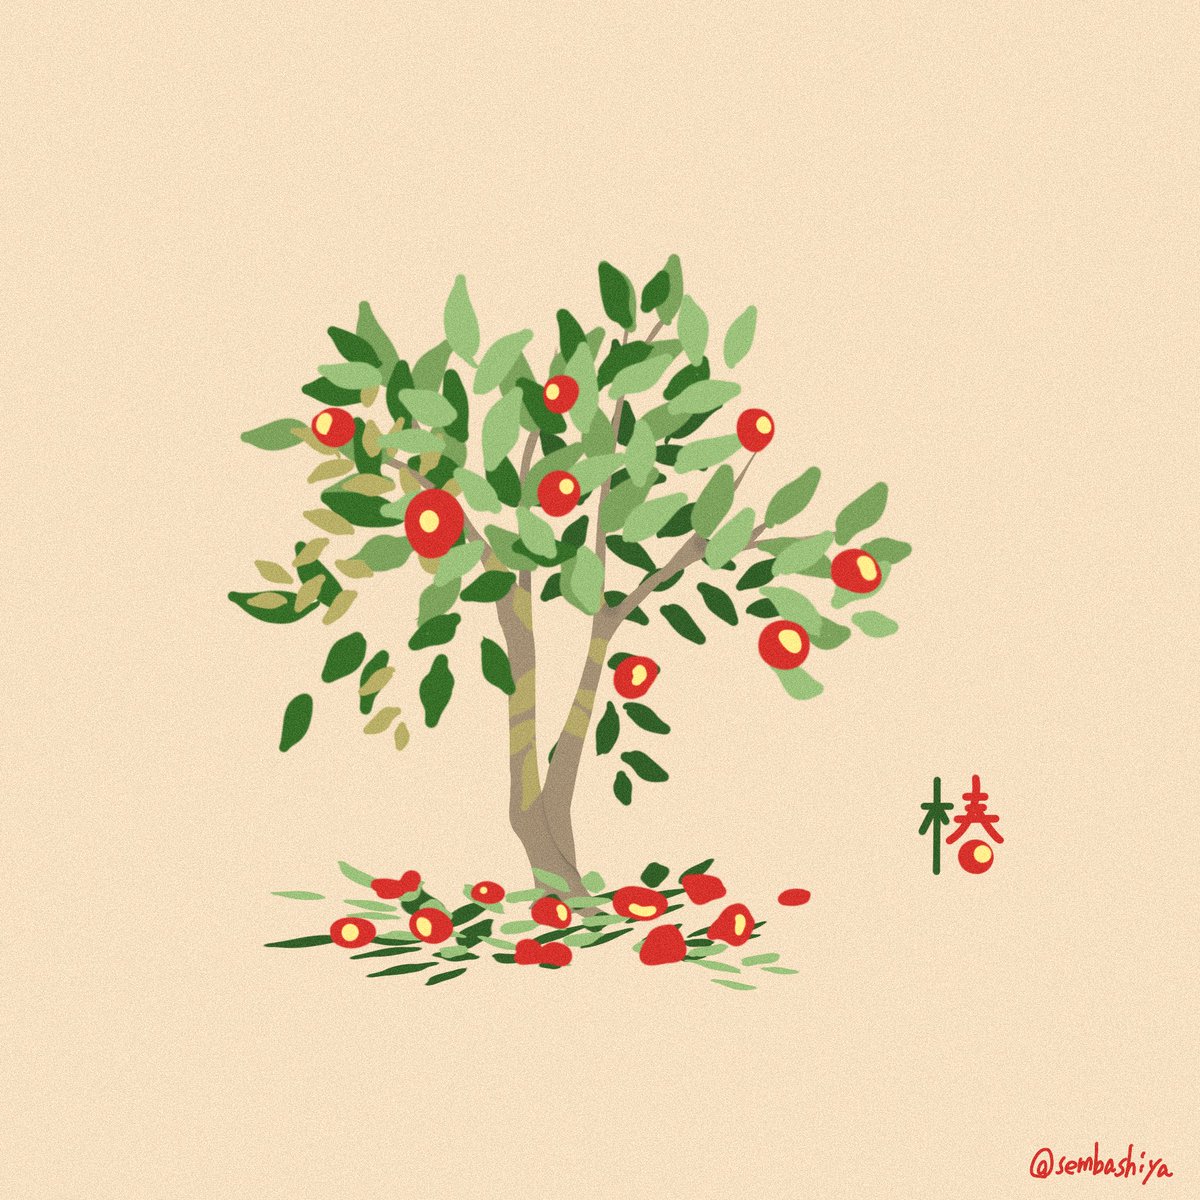 せんばしや ベランダから見える 椿の木がすごくかっこいい イラスト イラスト好きな人と繋がりたい 絵描きさんと繫がりたい ツバキ T Co Lit4sndvst Twitter